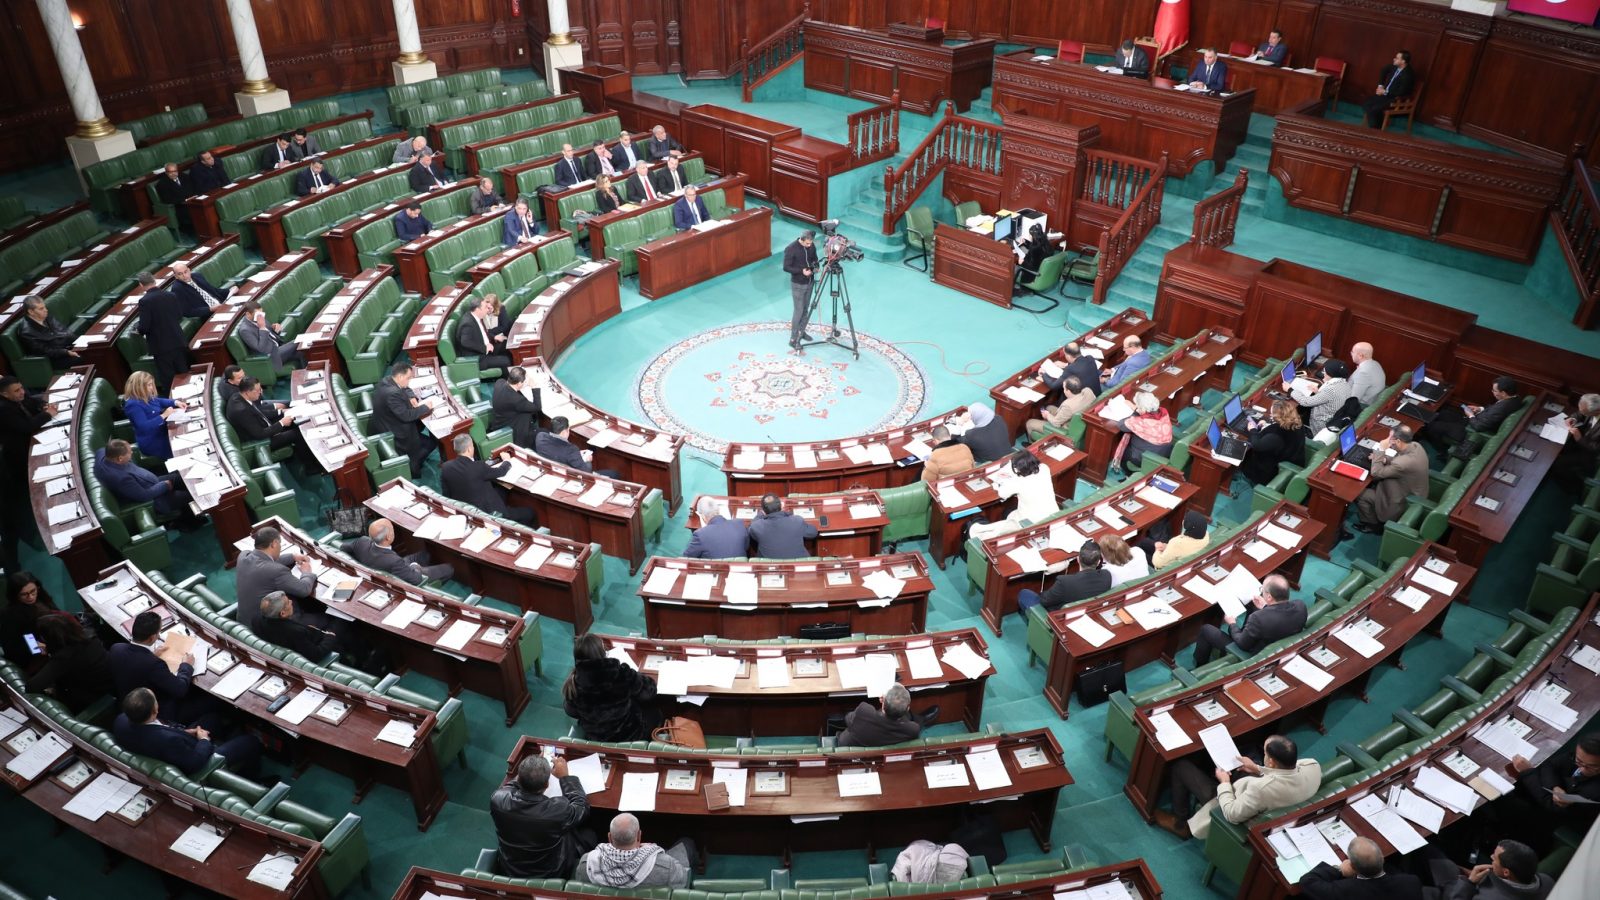 السنة الاولى للبرلمان.. ما انجز وما لم ينجز (رئيس لجنة التشريع العام يتحدث لـ”تونس الان)